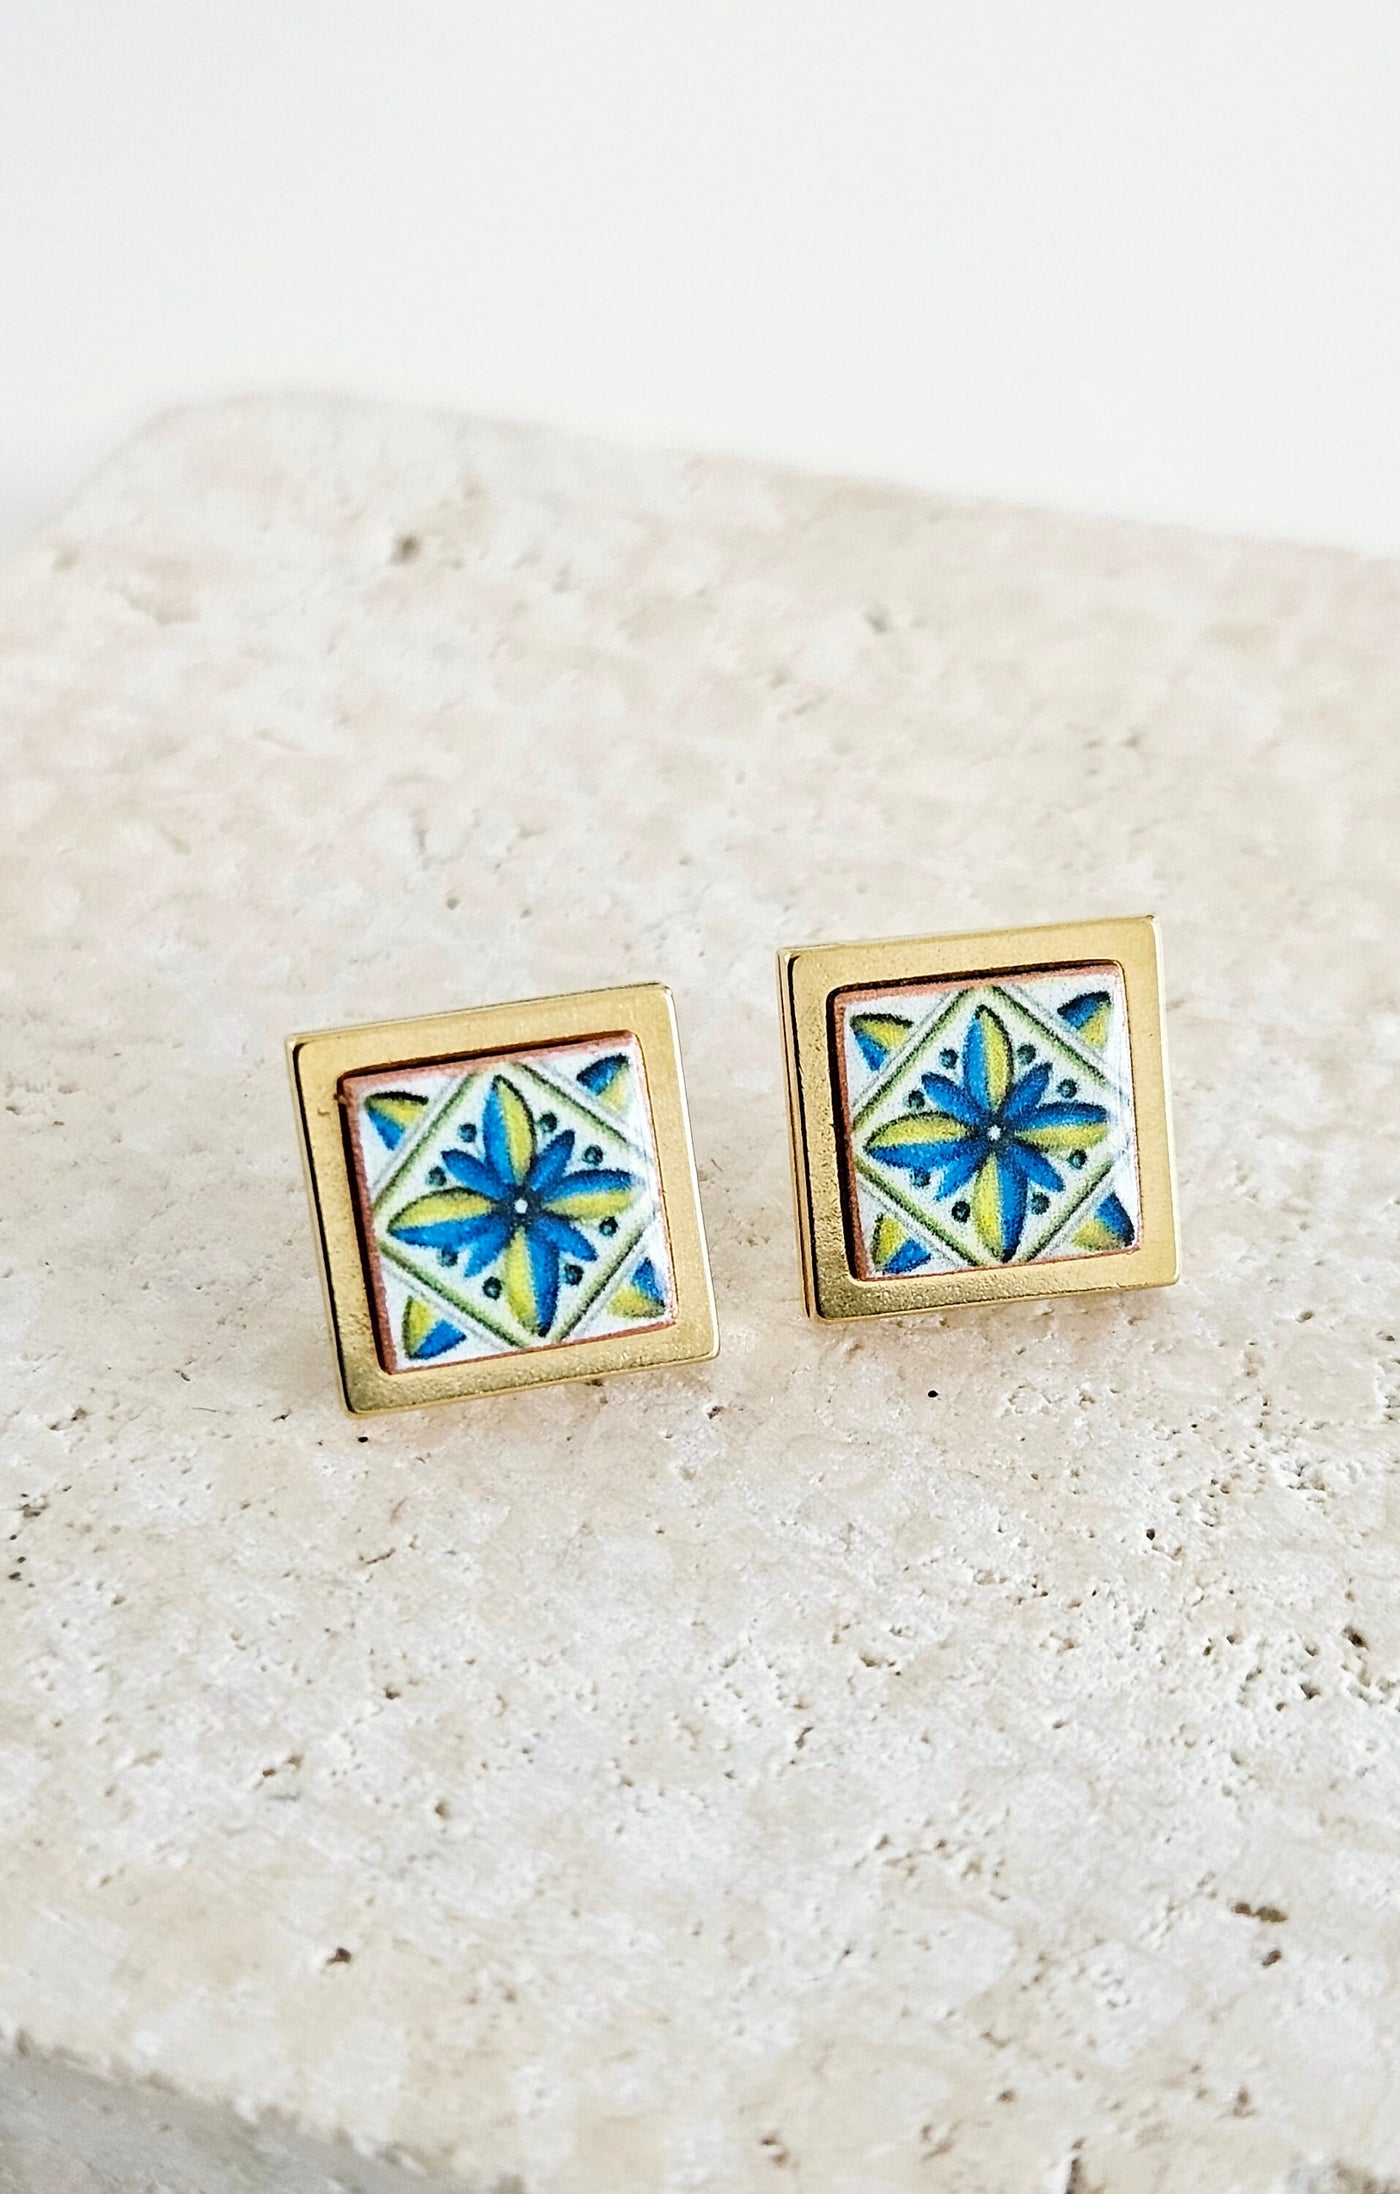 Majolica Azulejo Earring Tile Stainless STEEL Stud Earring Square Geometric Earring Gift Rose Gold Caltagirone Tile Earring Silver Gold